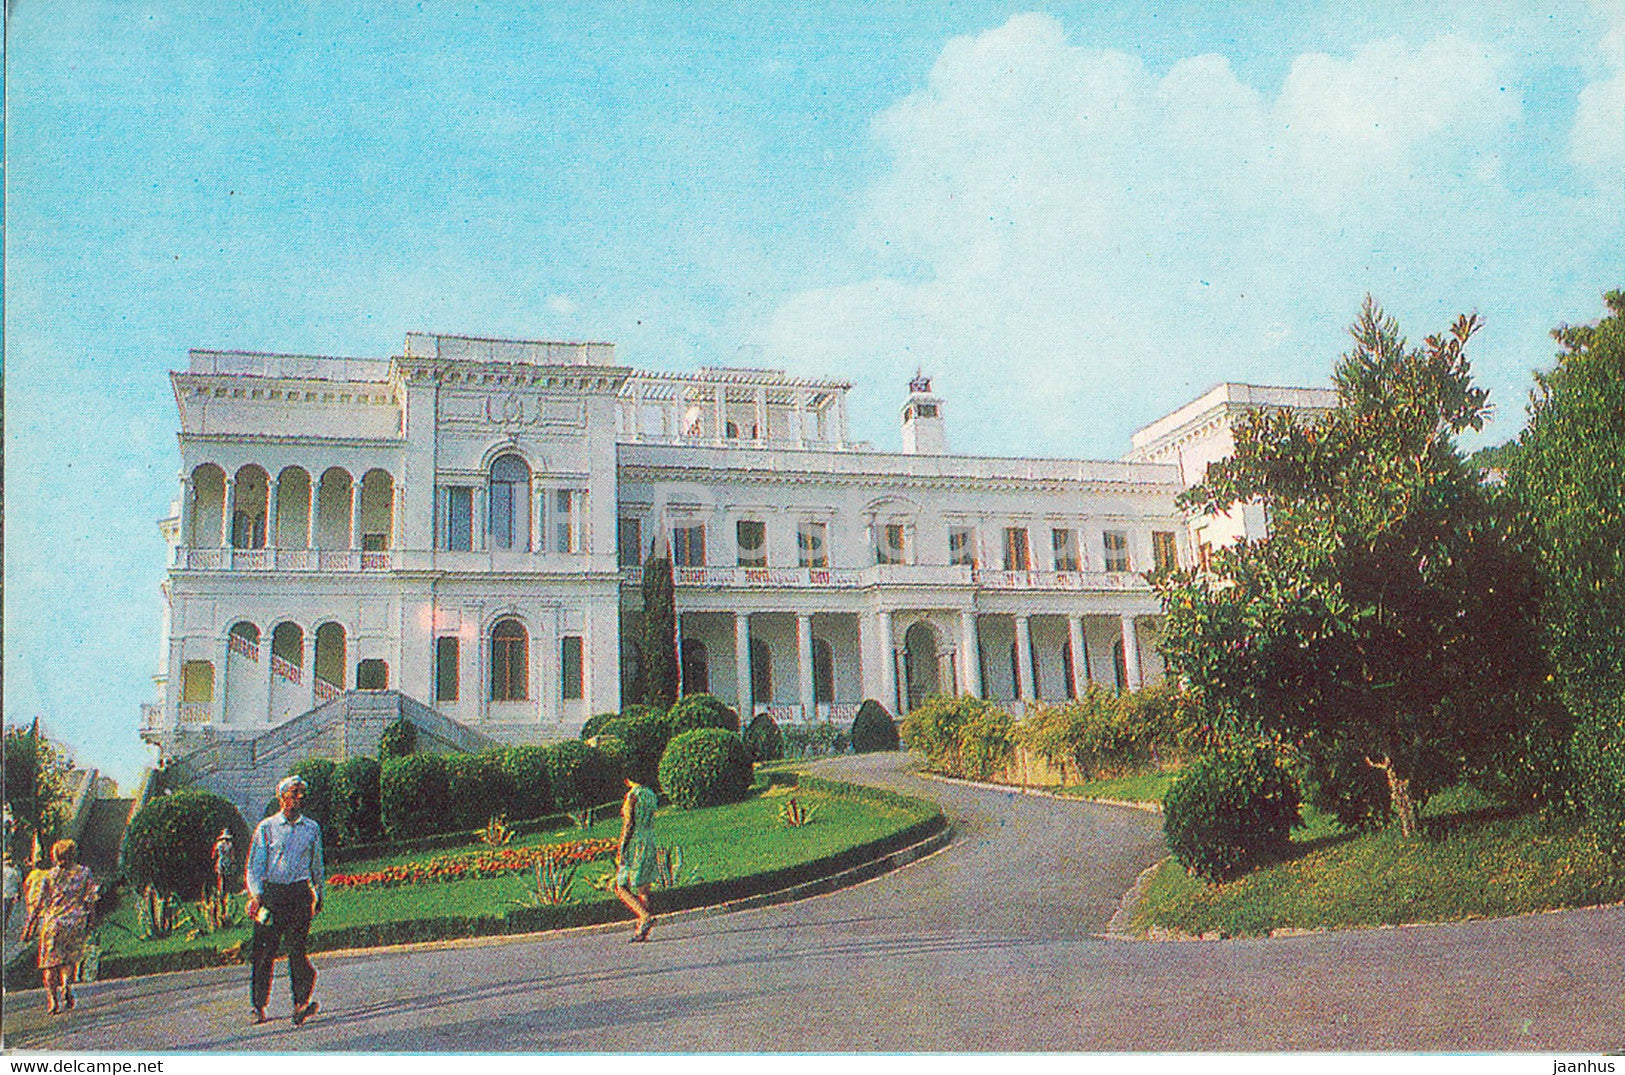 Yalta - Crimea - Livadia Palace - 1977 - Ukraine USSR - unused - JH Postcards